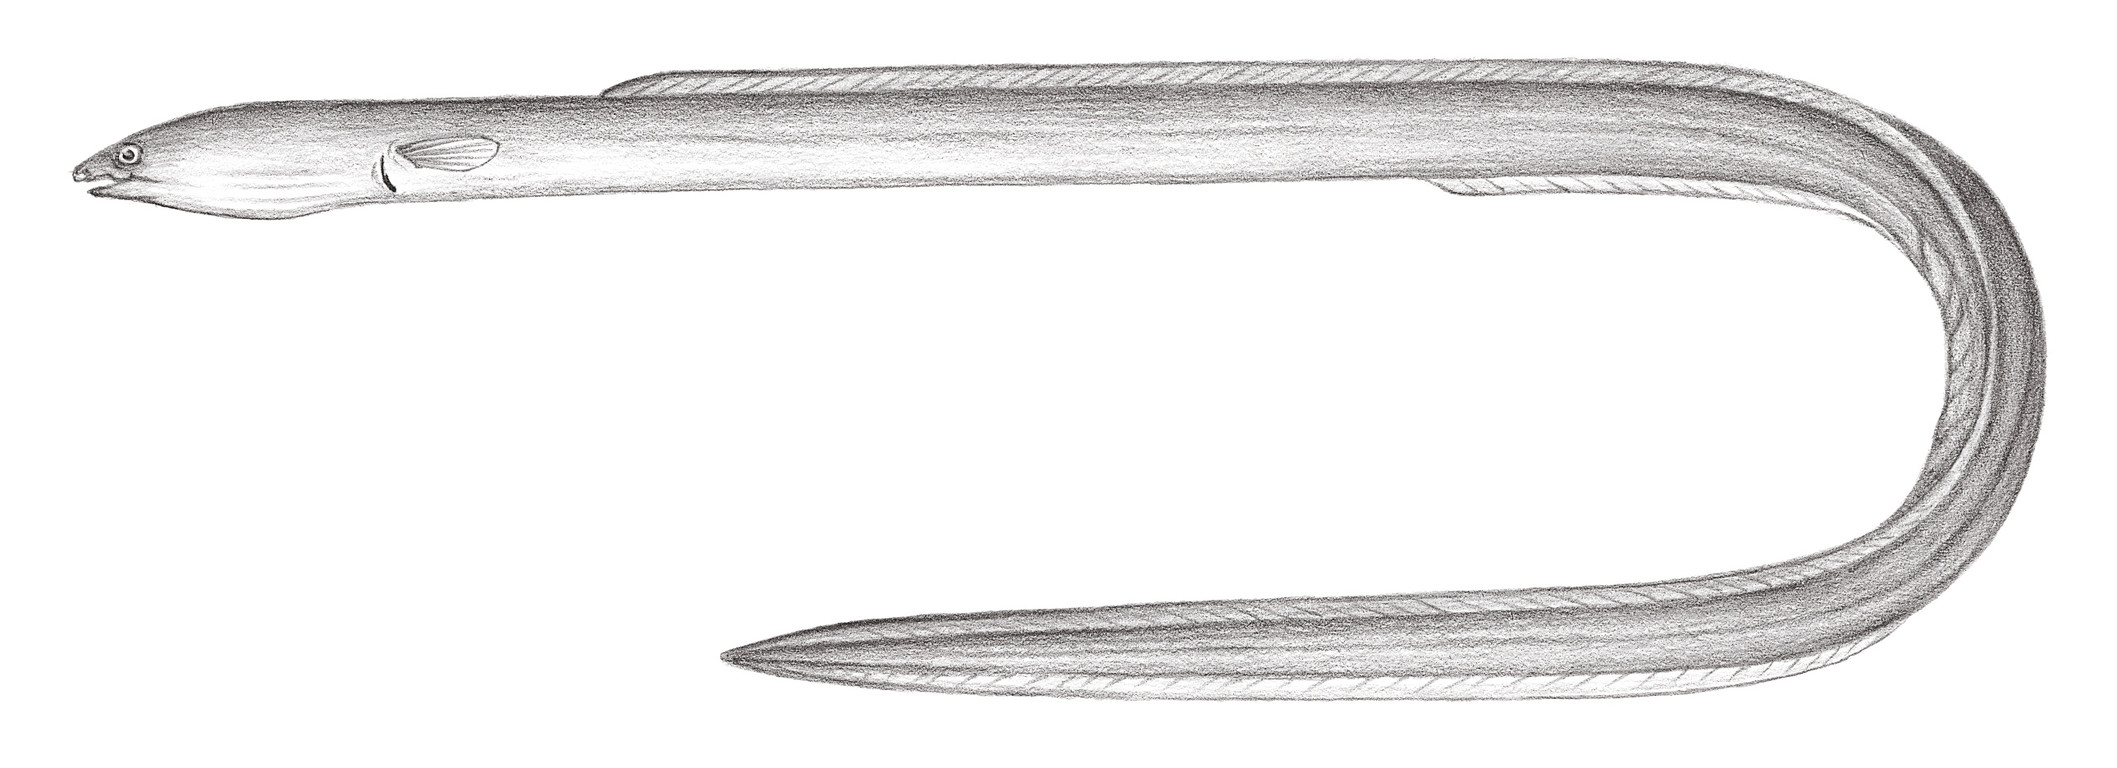 259.	雜食荳齒鰻 Pisodonophis boro (Hamlton-Buchanan, 1822)